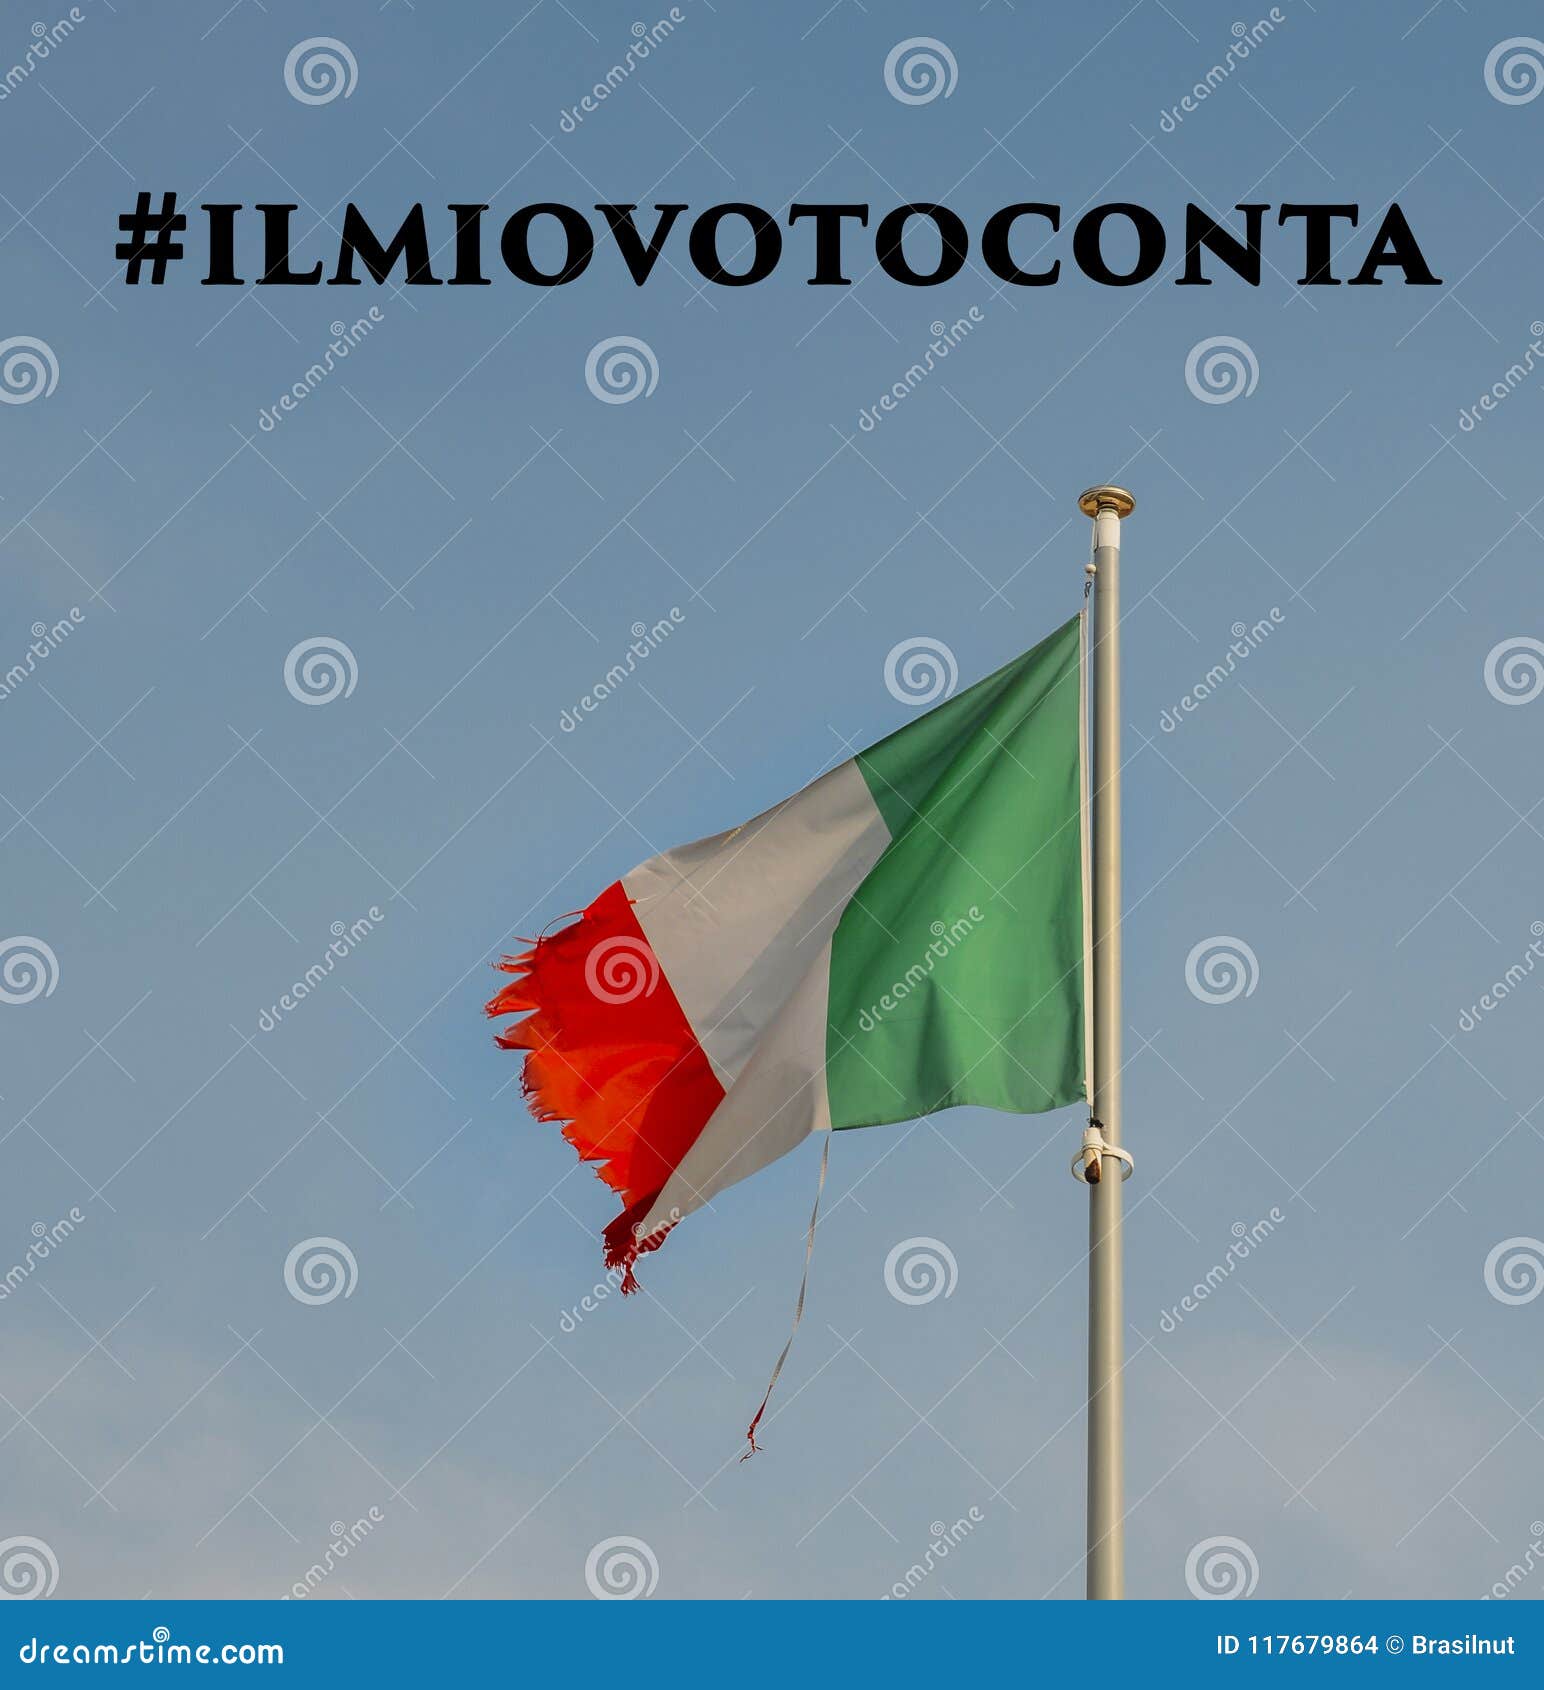 在吹在与被剥去的角落的风的帆柱的意大利旗子ilmiovoto Conta在意大利语到英语被翻译意味我的v 库存照片 图片